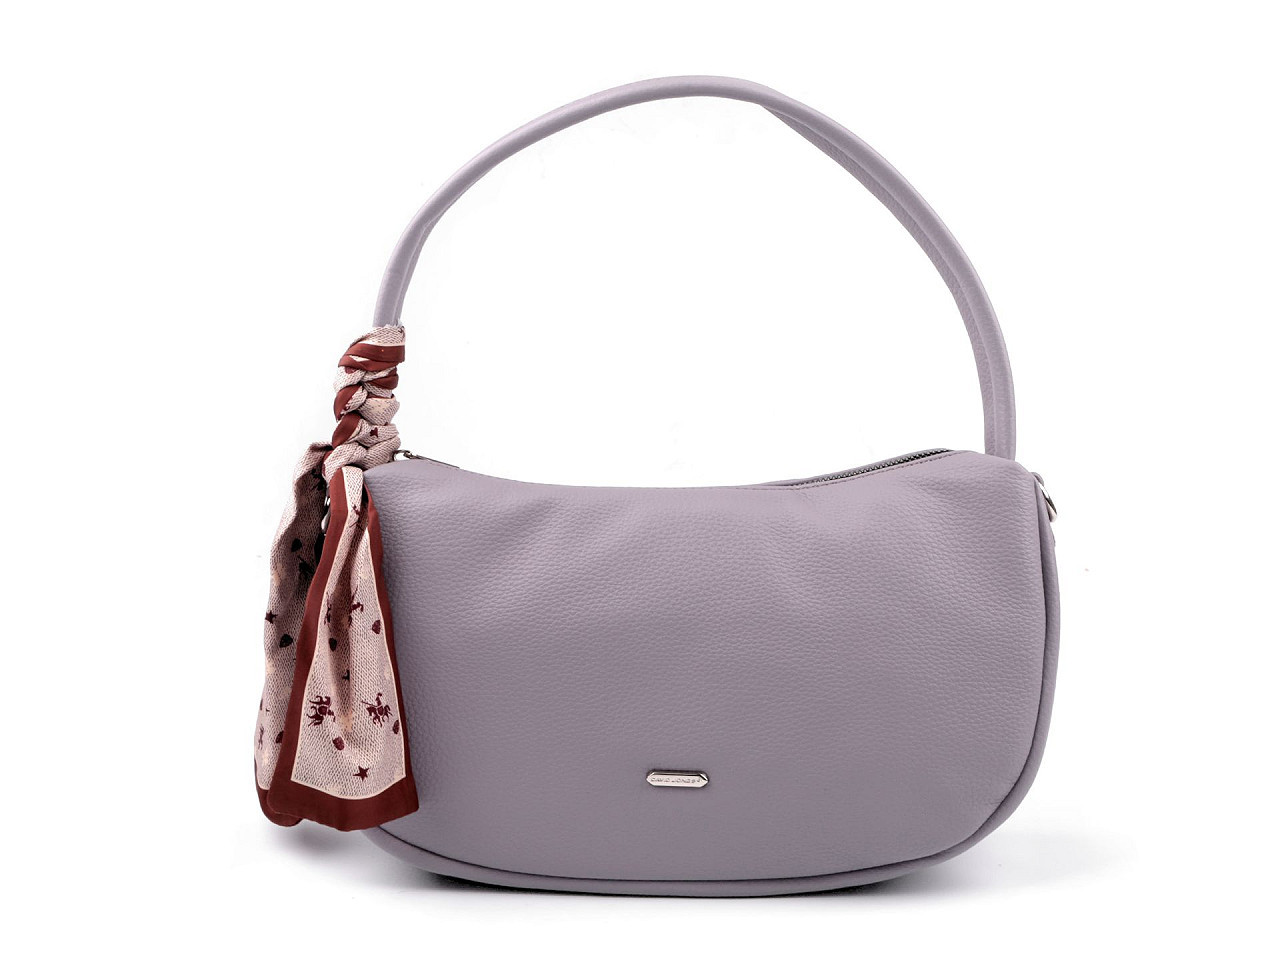 Dámská kabelka 32x19 cm, barva 7 fialová lila světlá